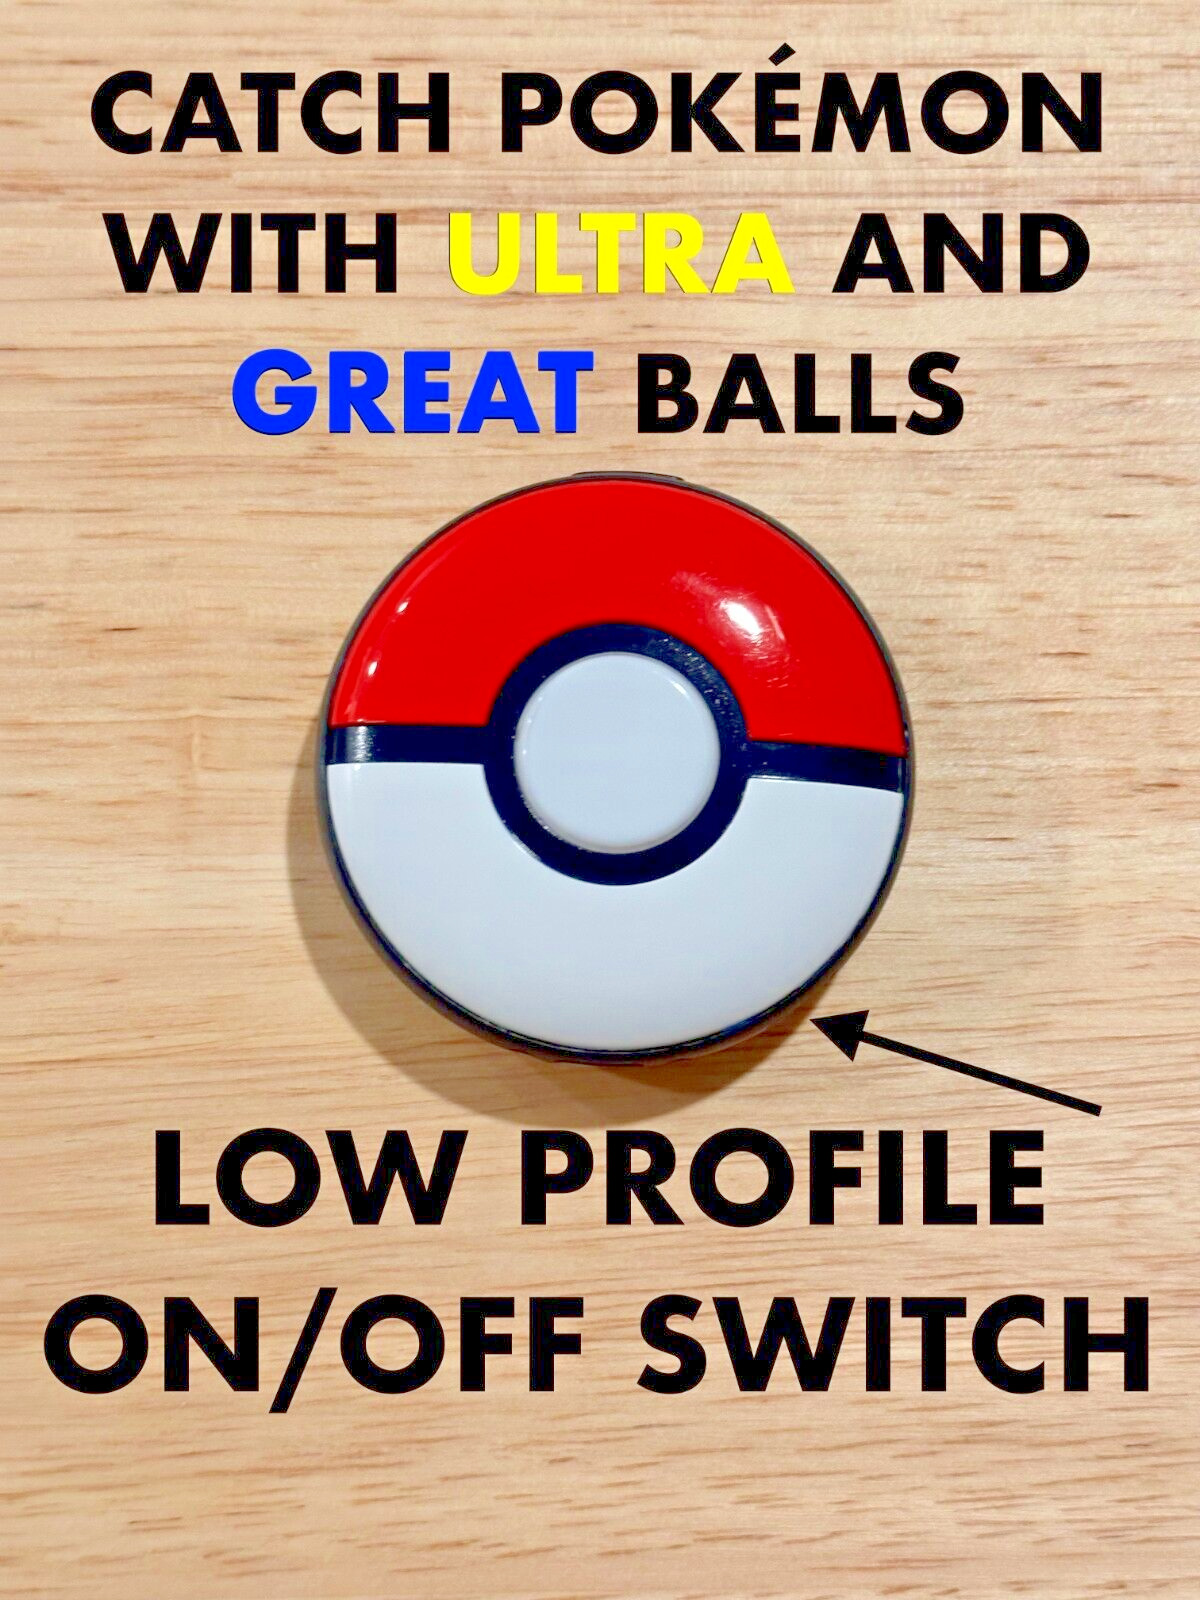 MODDED Pokémon GO Plus + Ultra and Great Ball Autocatcher - LOW PROFILE SWITCH